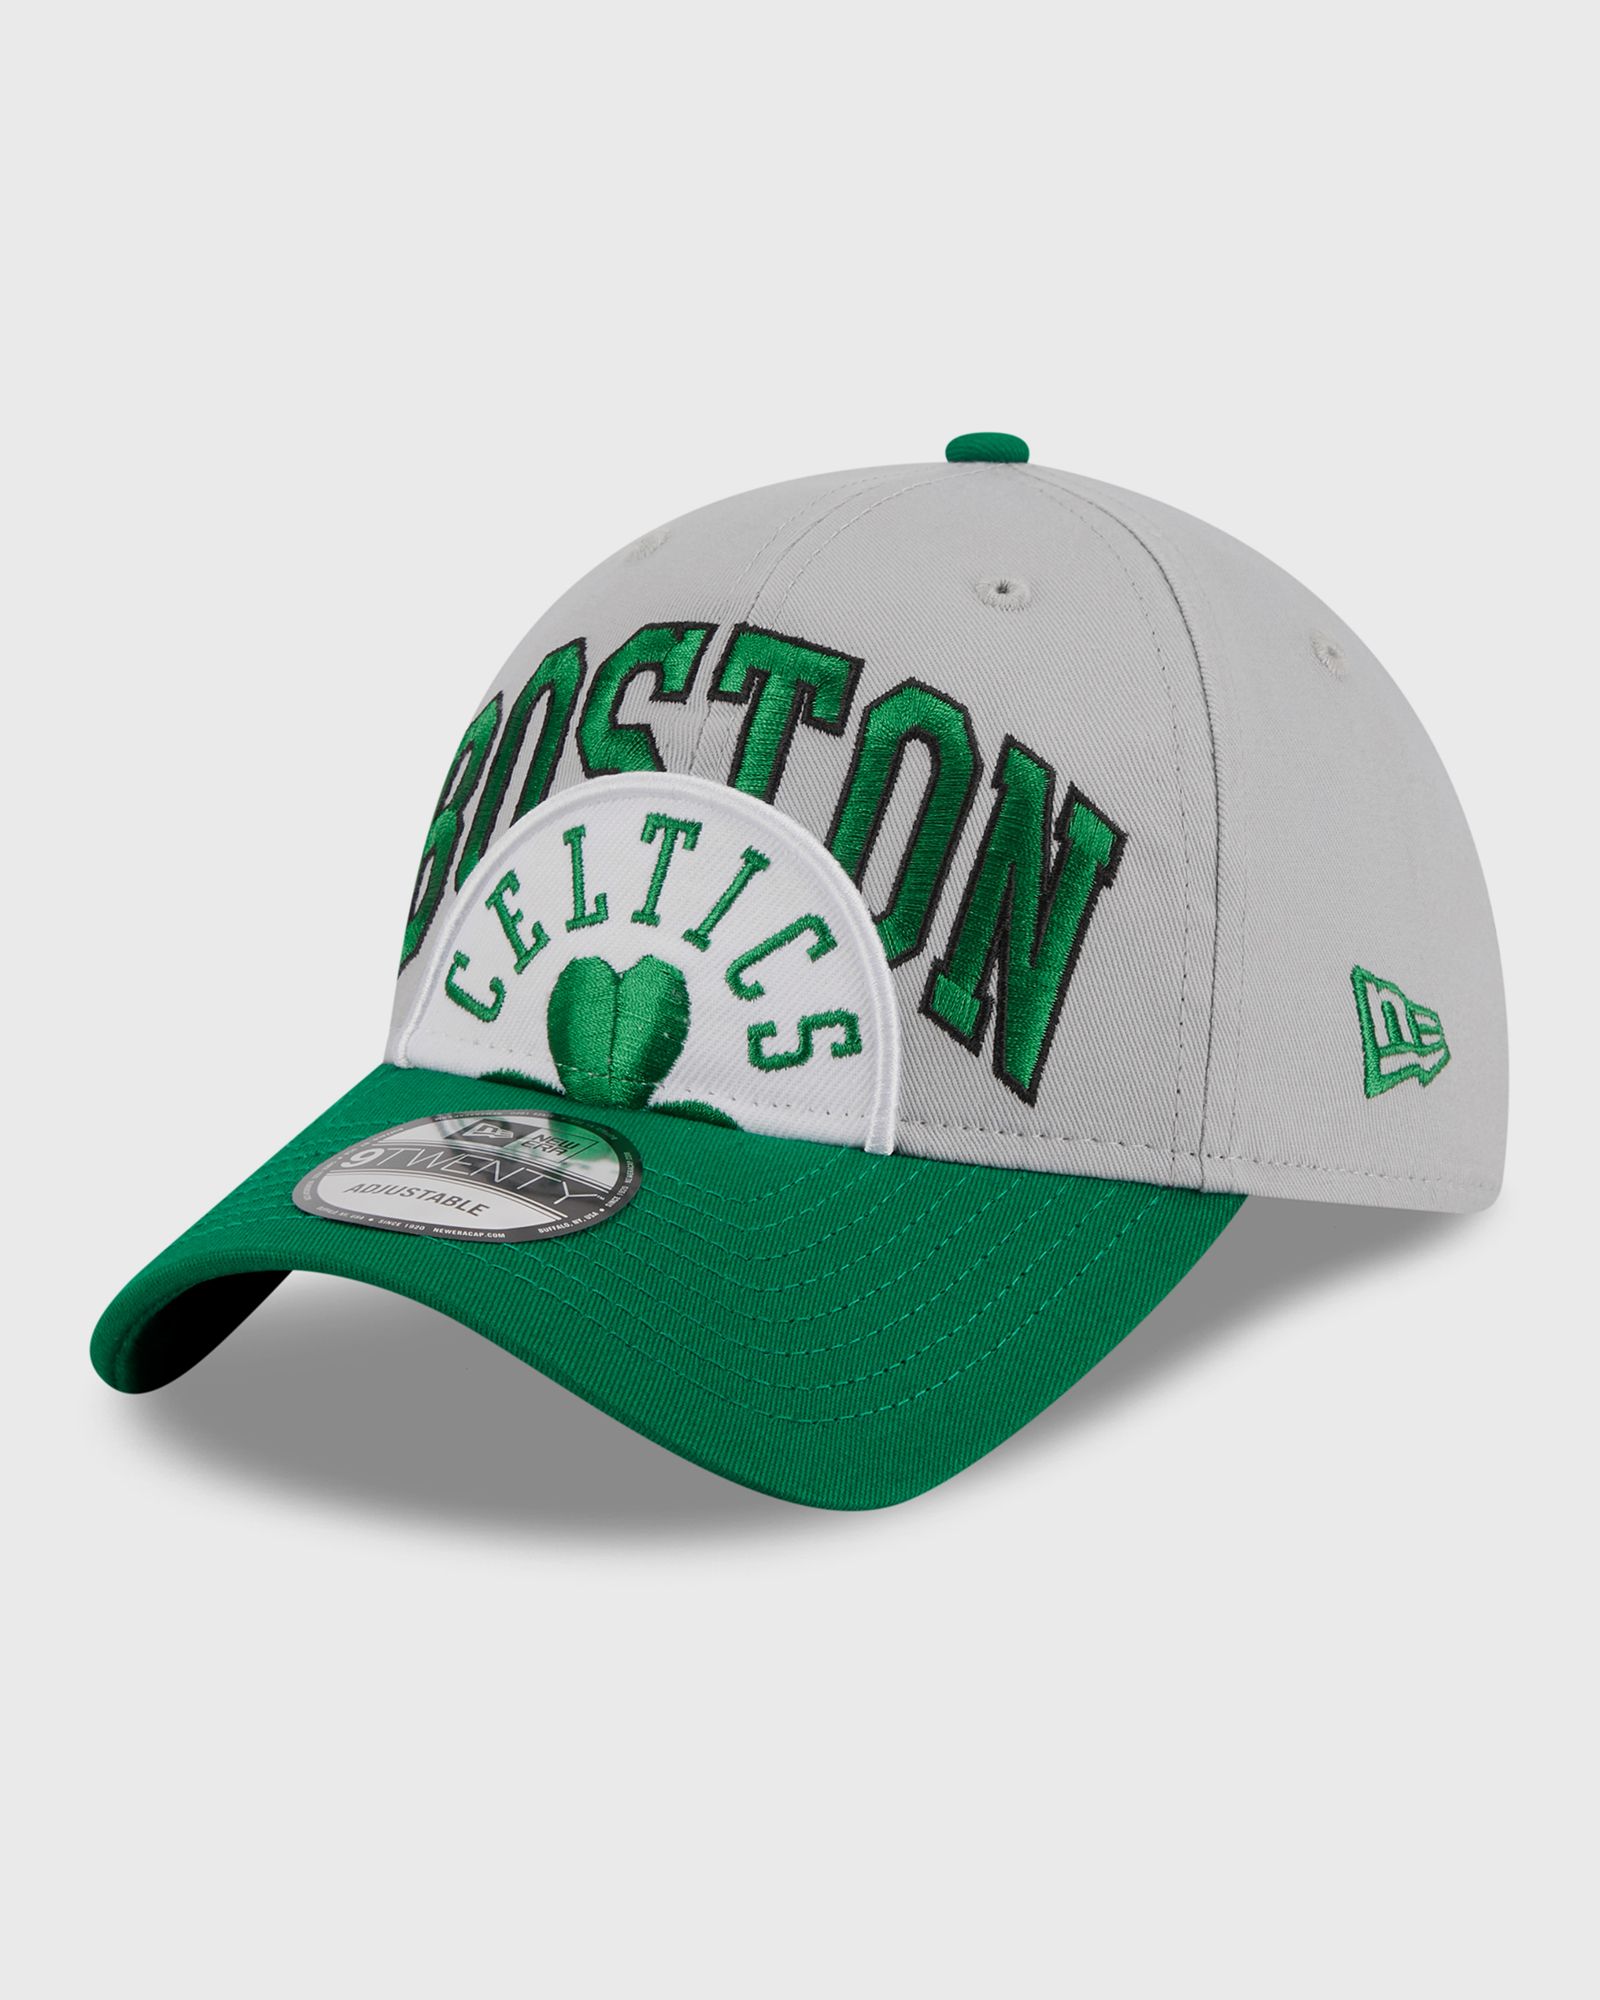 New Era - 920 nba to 23 boston celtics  dgrotc men caps green|grey in größe:one size